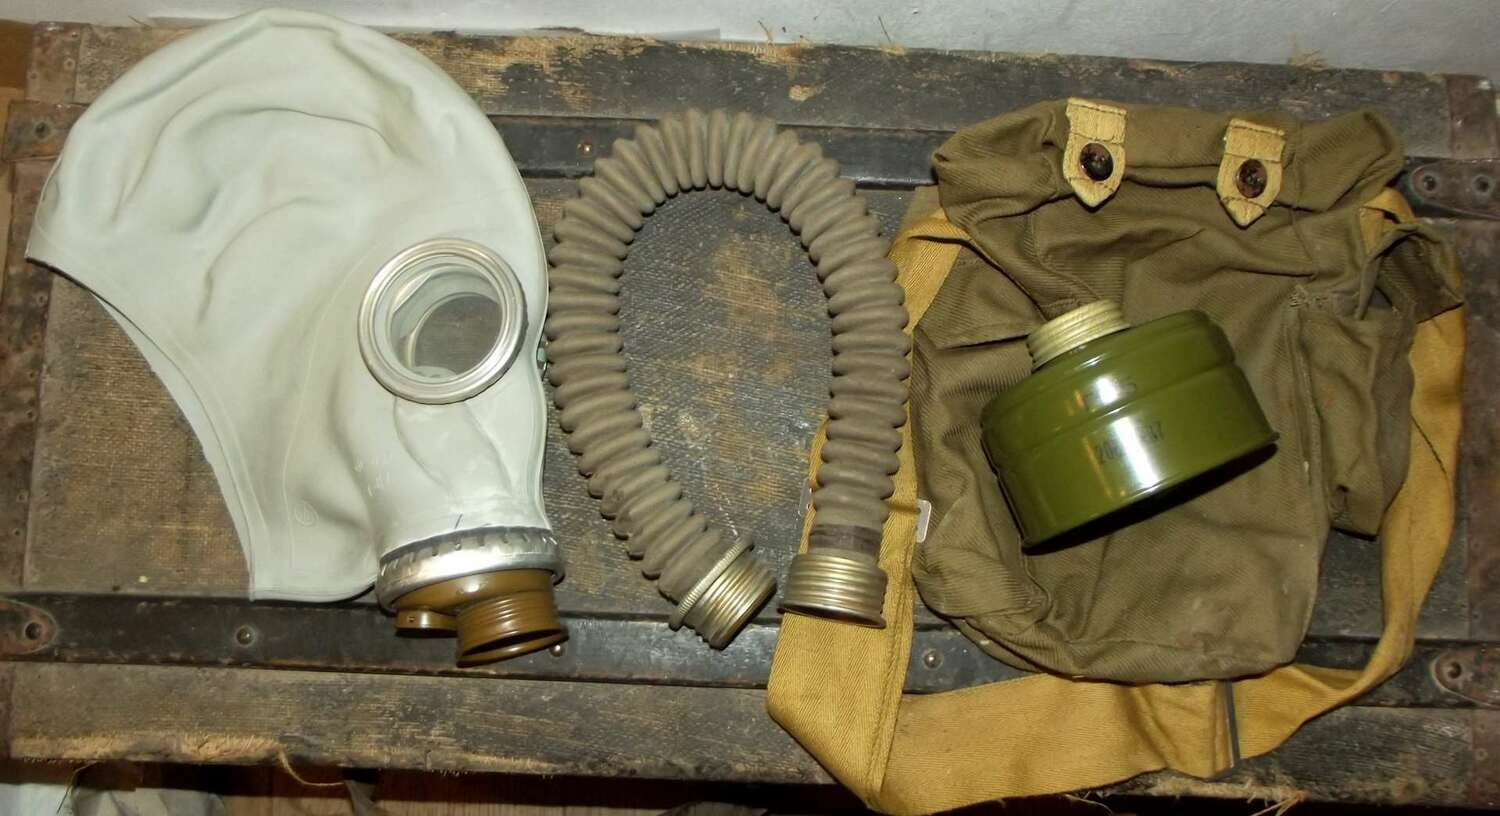 Masque à gaz militaire russe soviétique